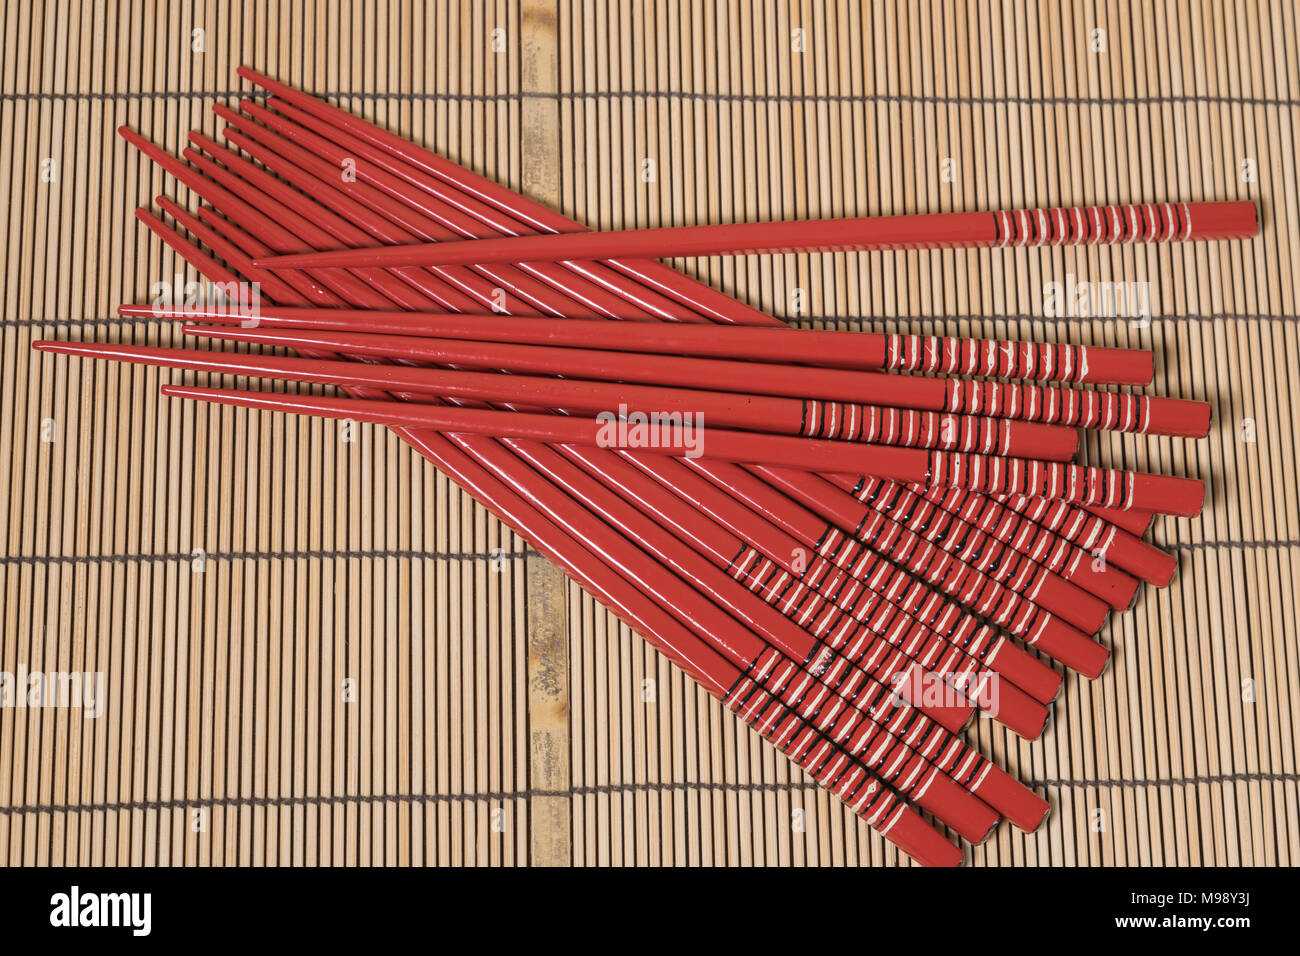 Rot lackierten Stäbchen auf einem Bambus Matte Stockfoto